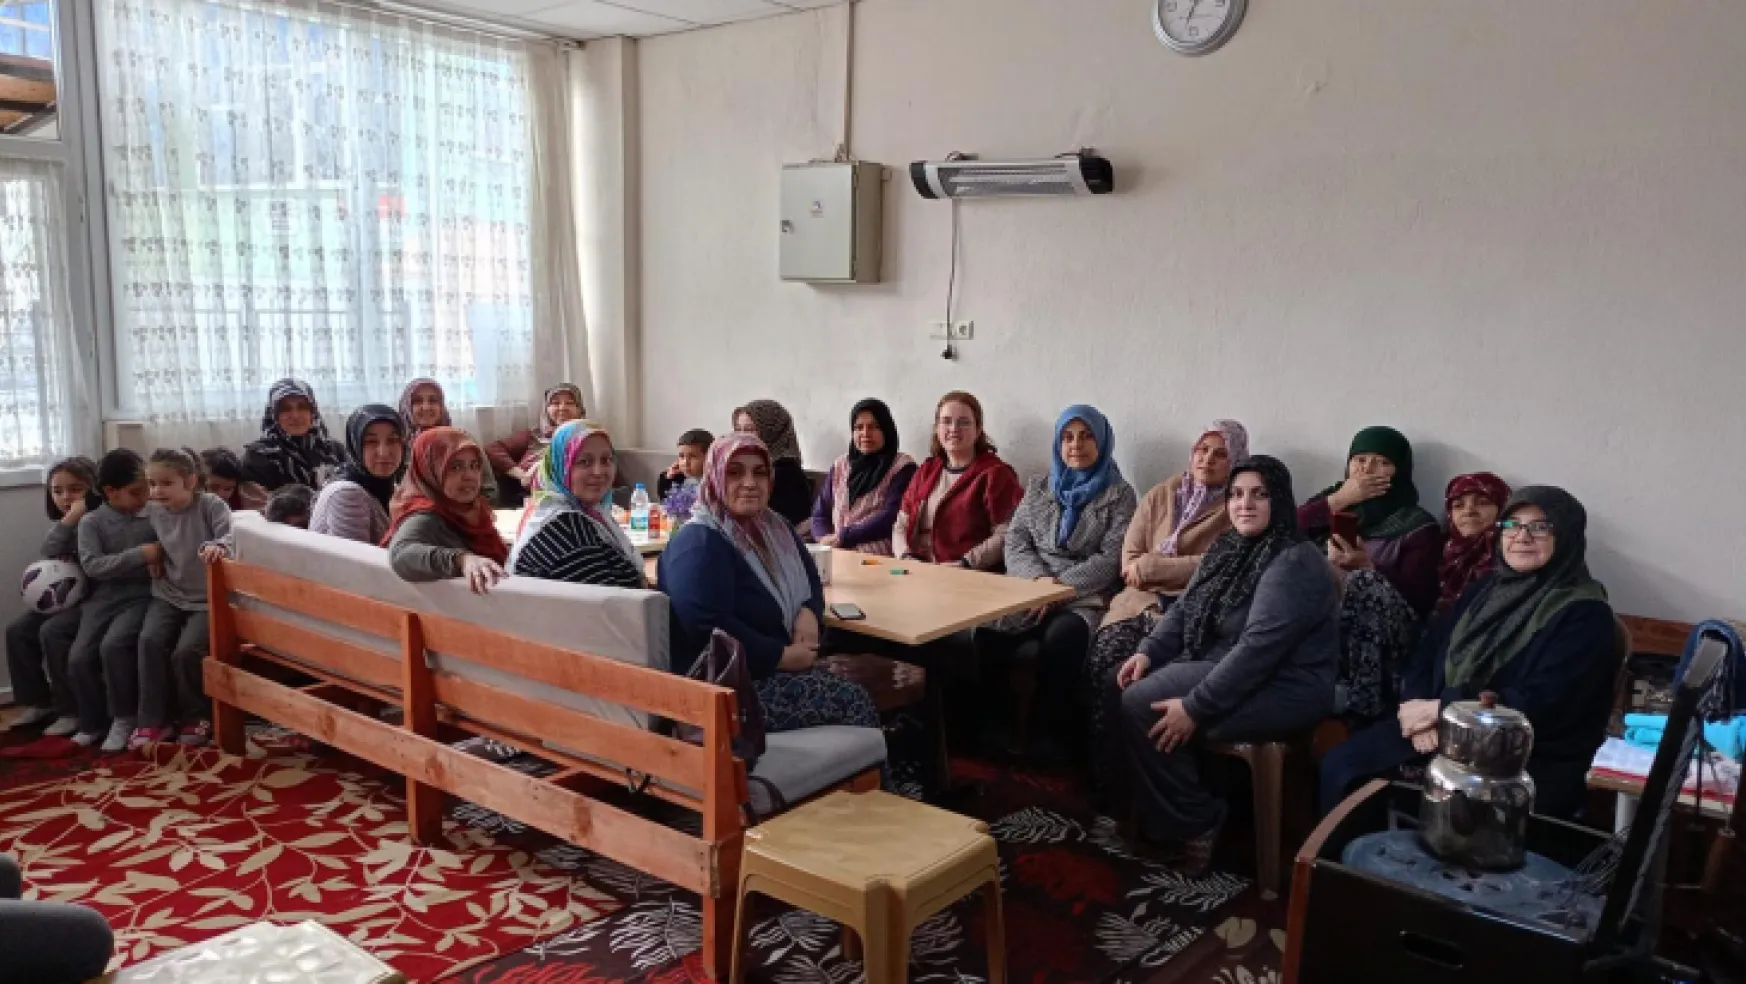 Avşar Mahallesi Kadınları Faruk Keskin'e tam destek dedi